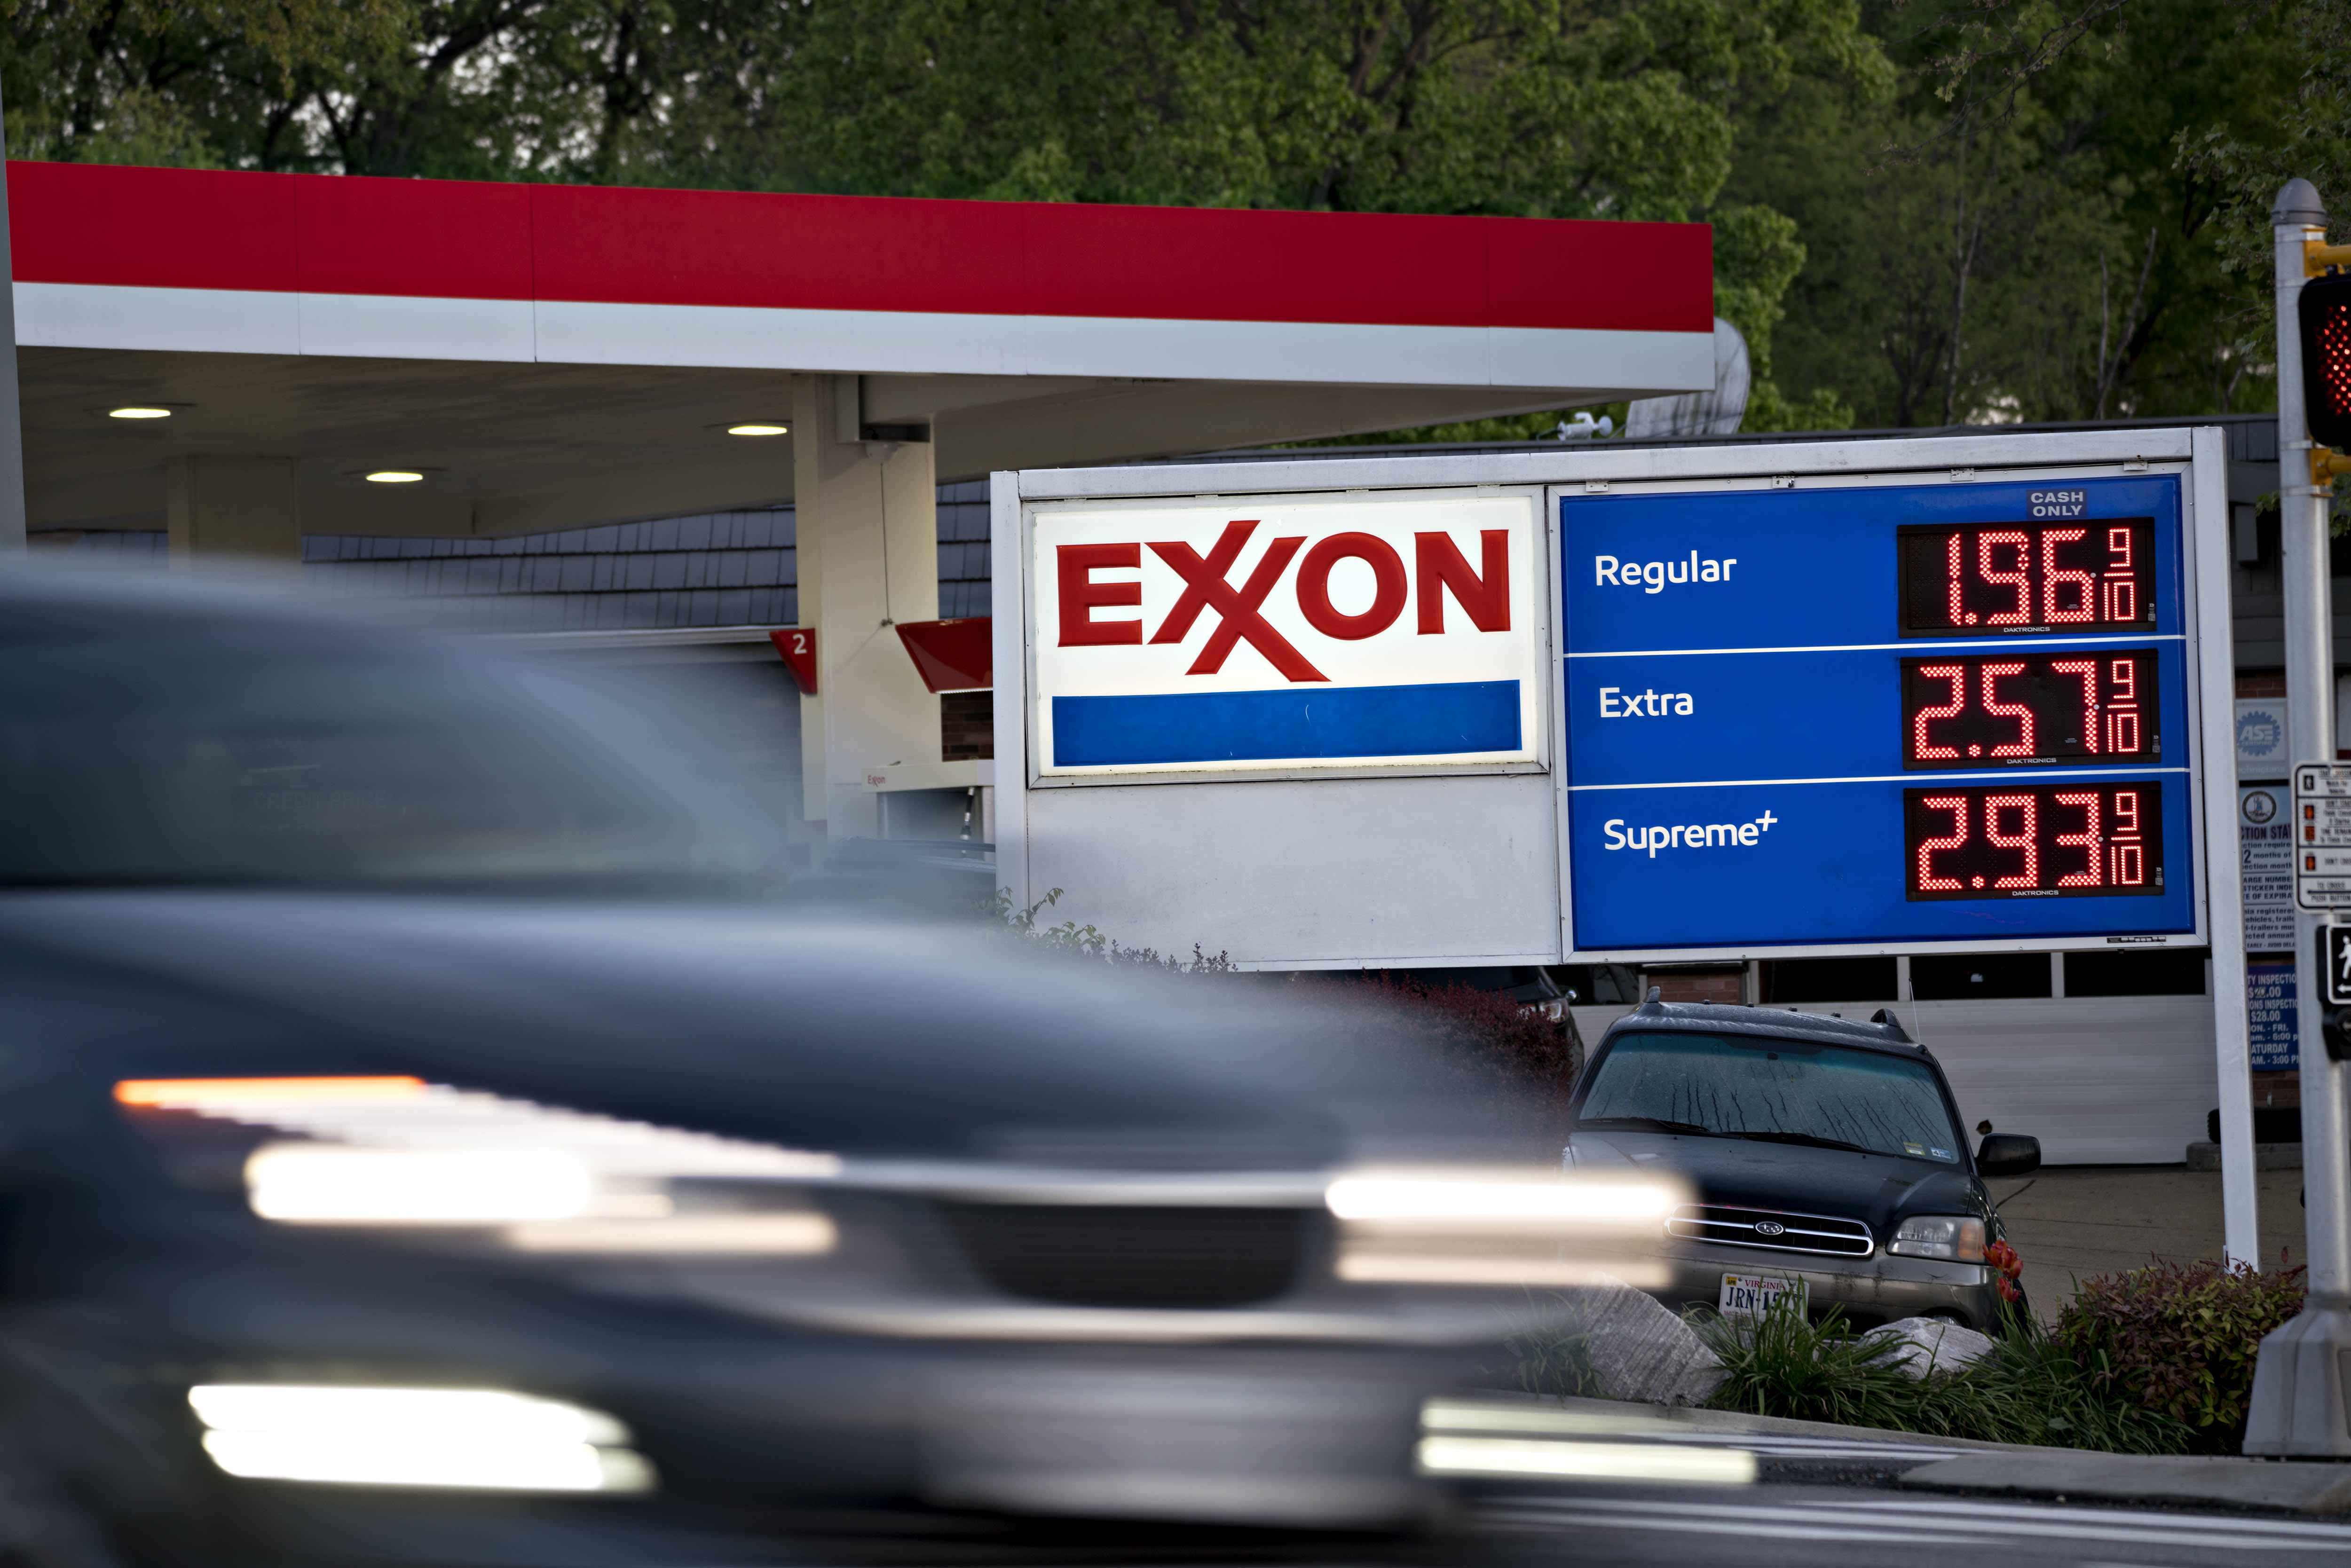 chevron exxon oil prices merger